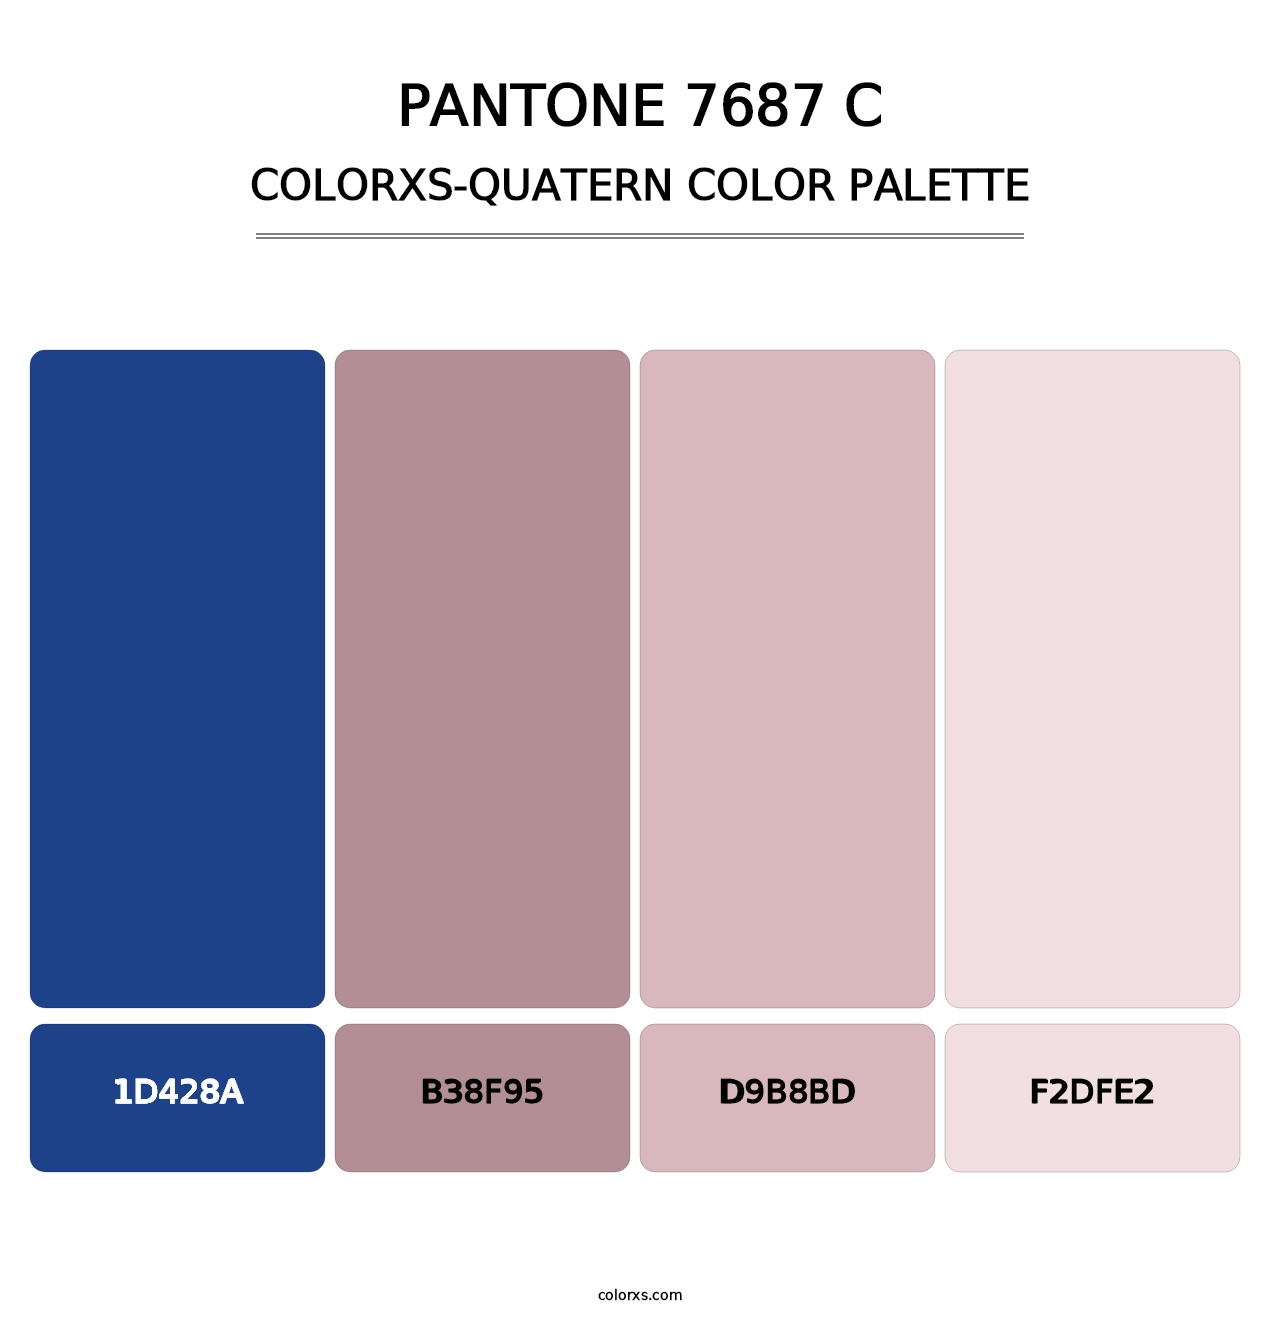 PANTONE 7687 C - Colorxs Quatern Palette